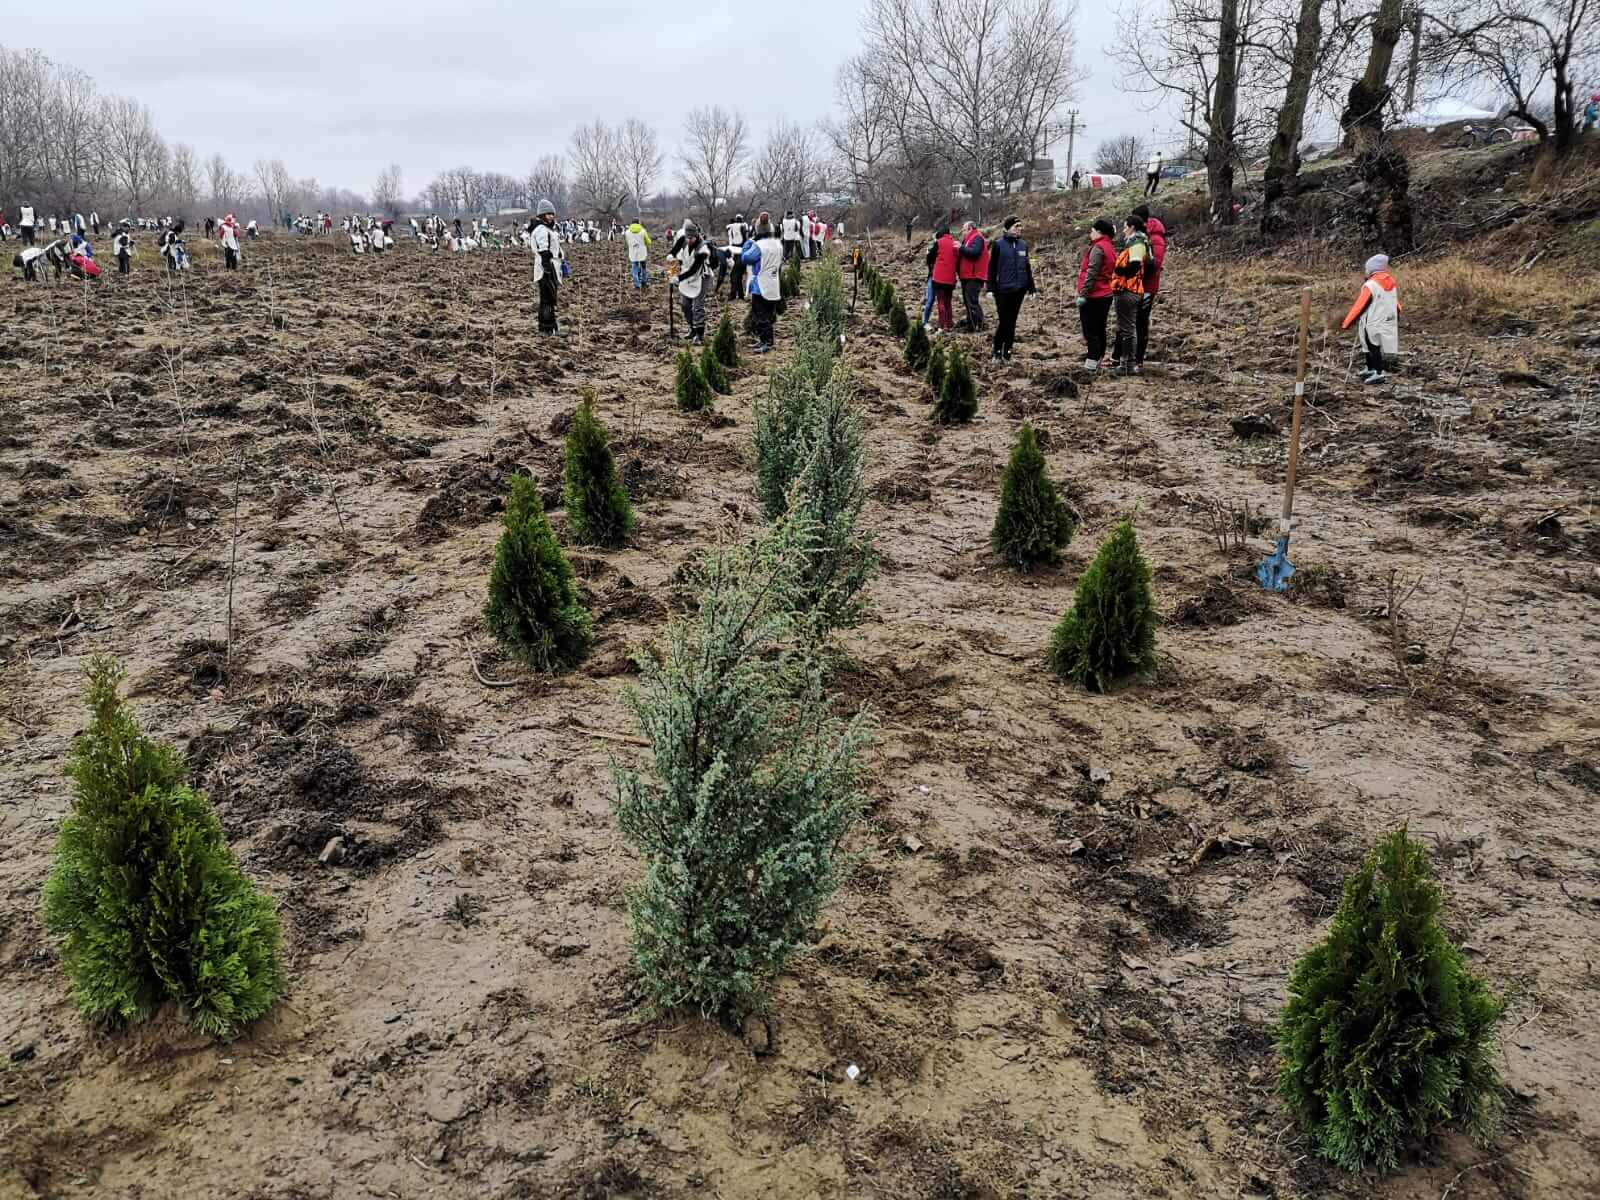 Pe 23 noiembrie, am contribuit, alaturi de alte cateva sute de voluntari si de asociatia Padurea Copiilor, la plantarea a 11.000 de puieti, pe o suprafata de 2 hectare, in Tinosu, Prahova.